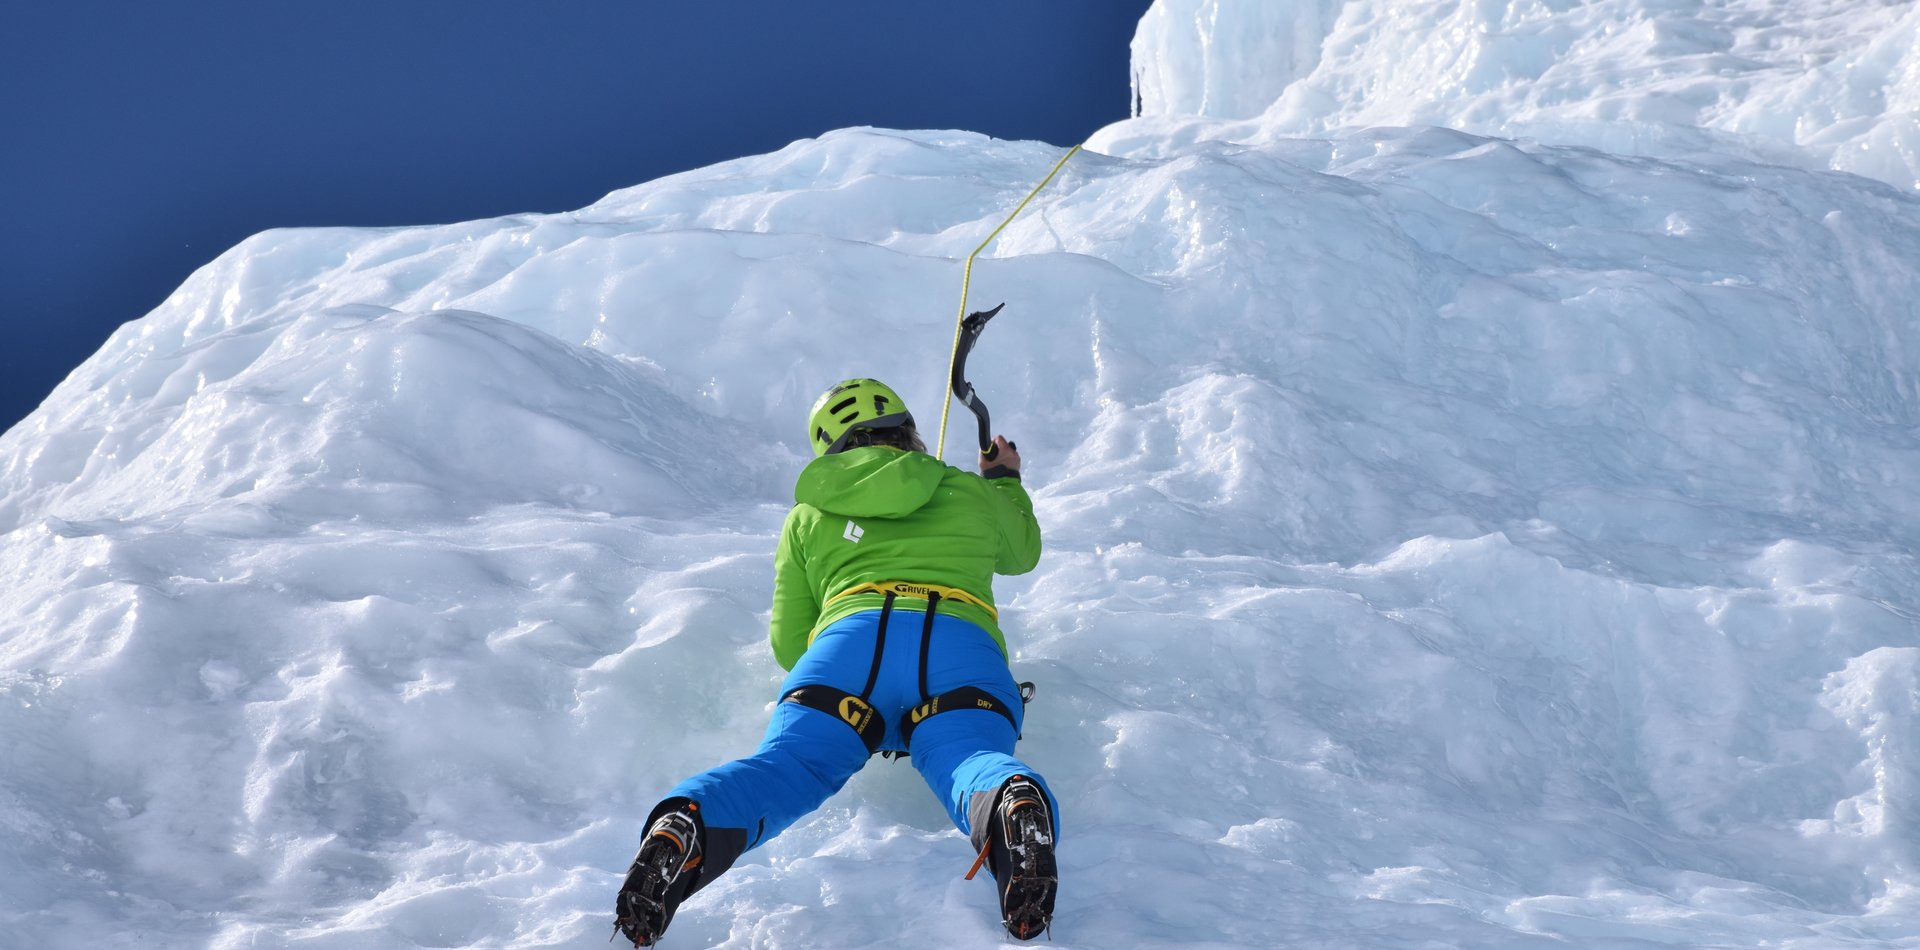 Ice climbing - arrampicata su ghiaccio a Passo del Tonale | © Archivio APT Val di Sole - Ph Dario Andreis